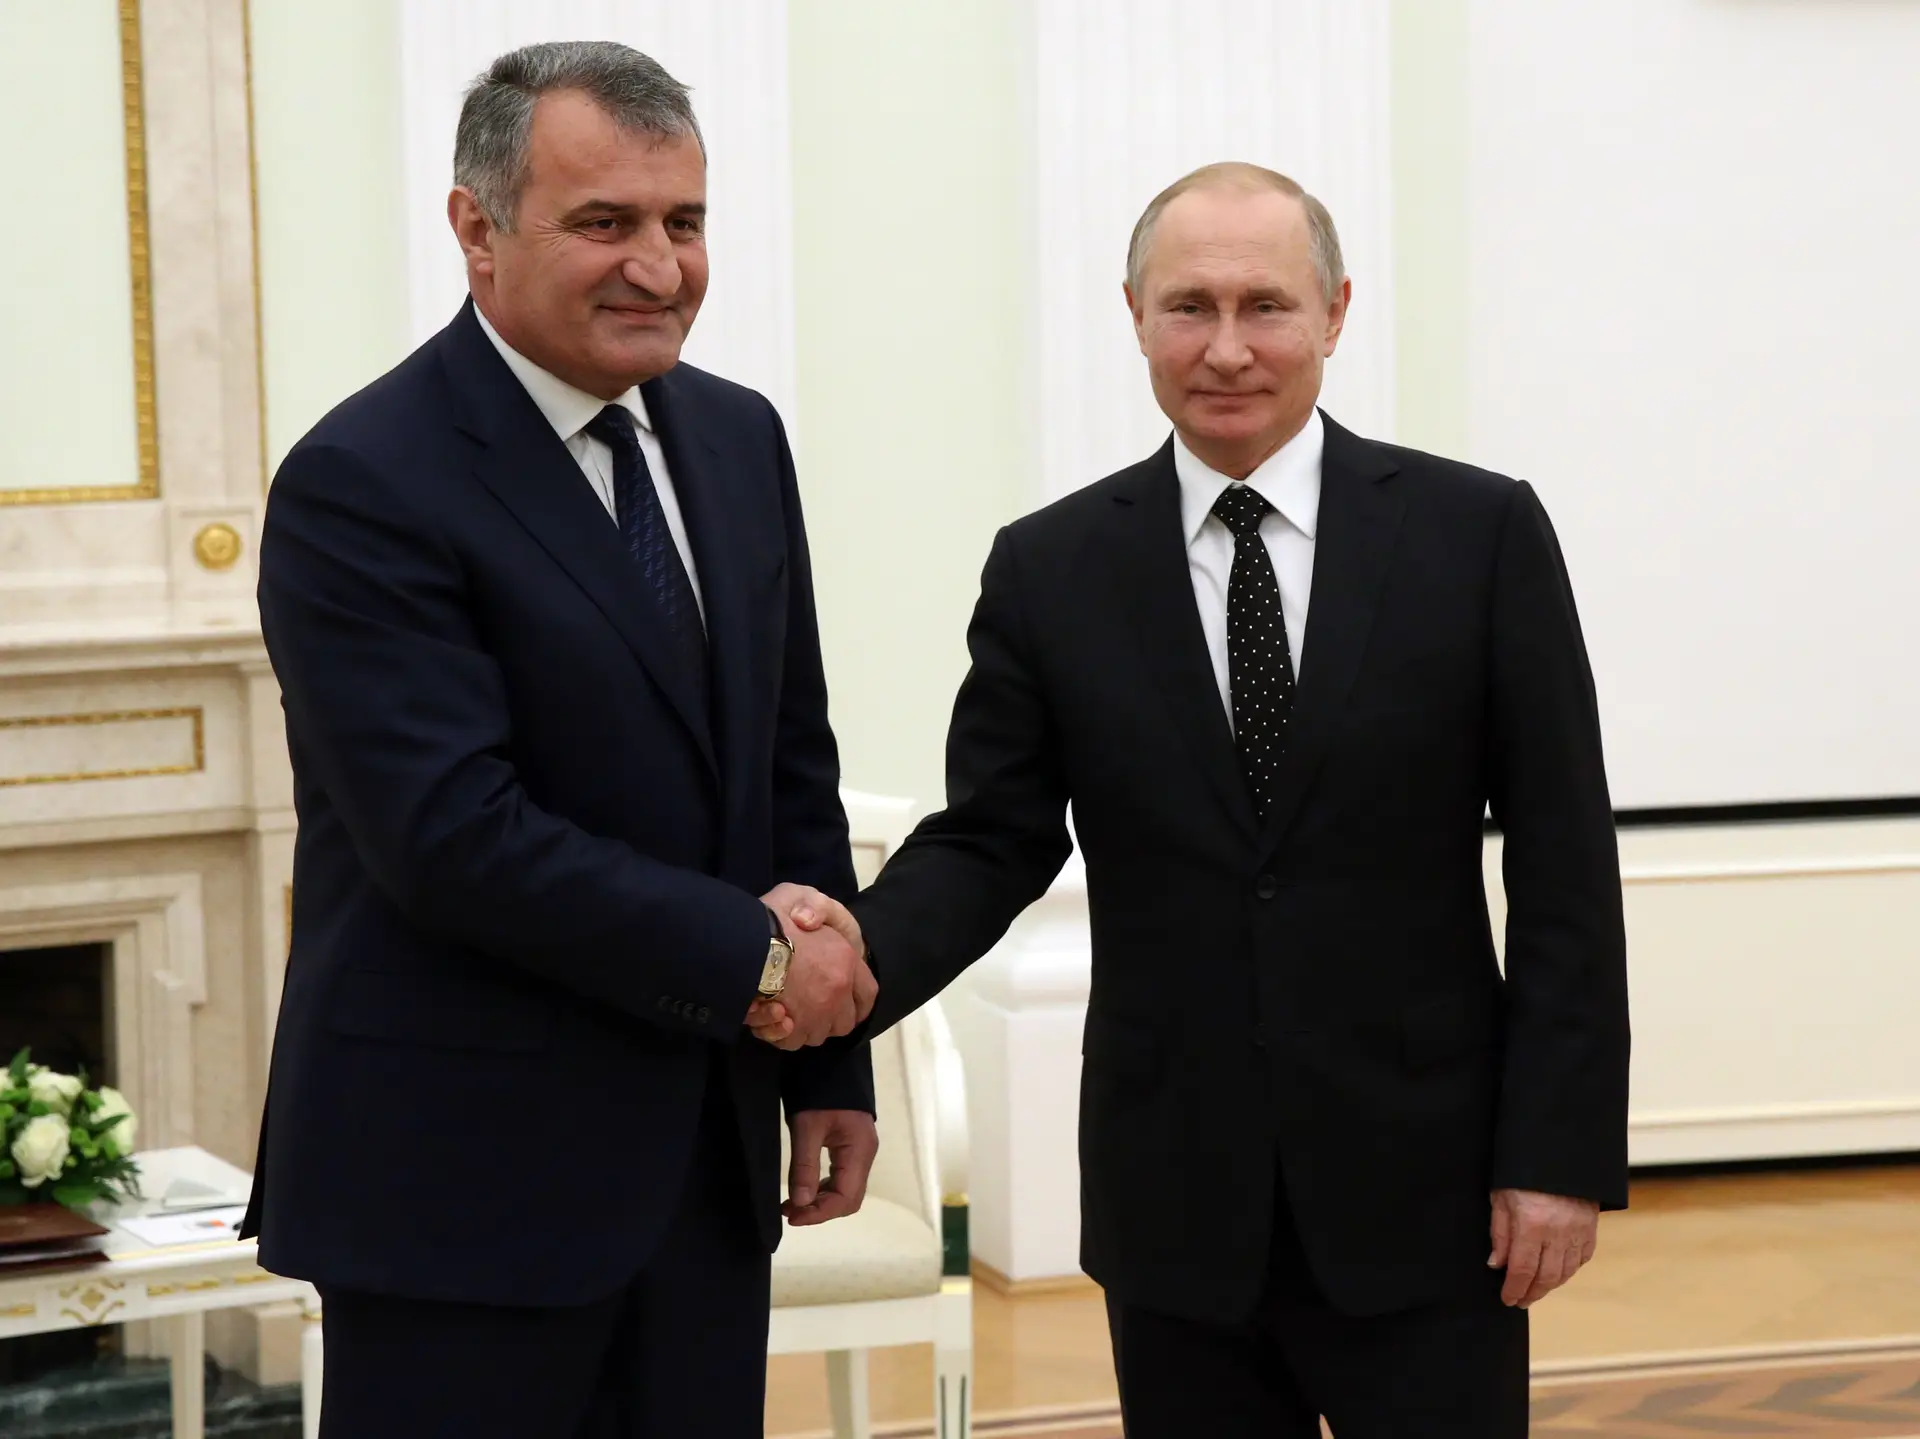 Ossétia do Sul lança processo para integração na Rússia - Expresso